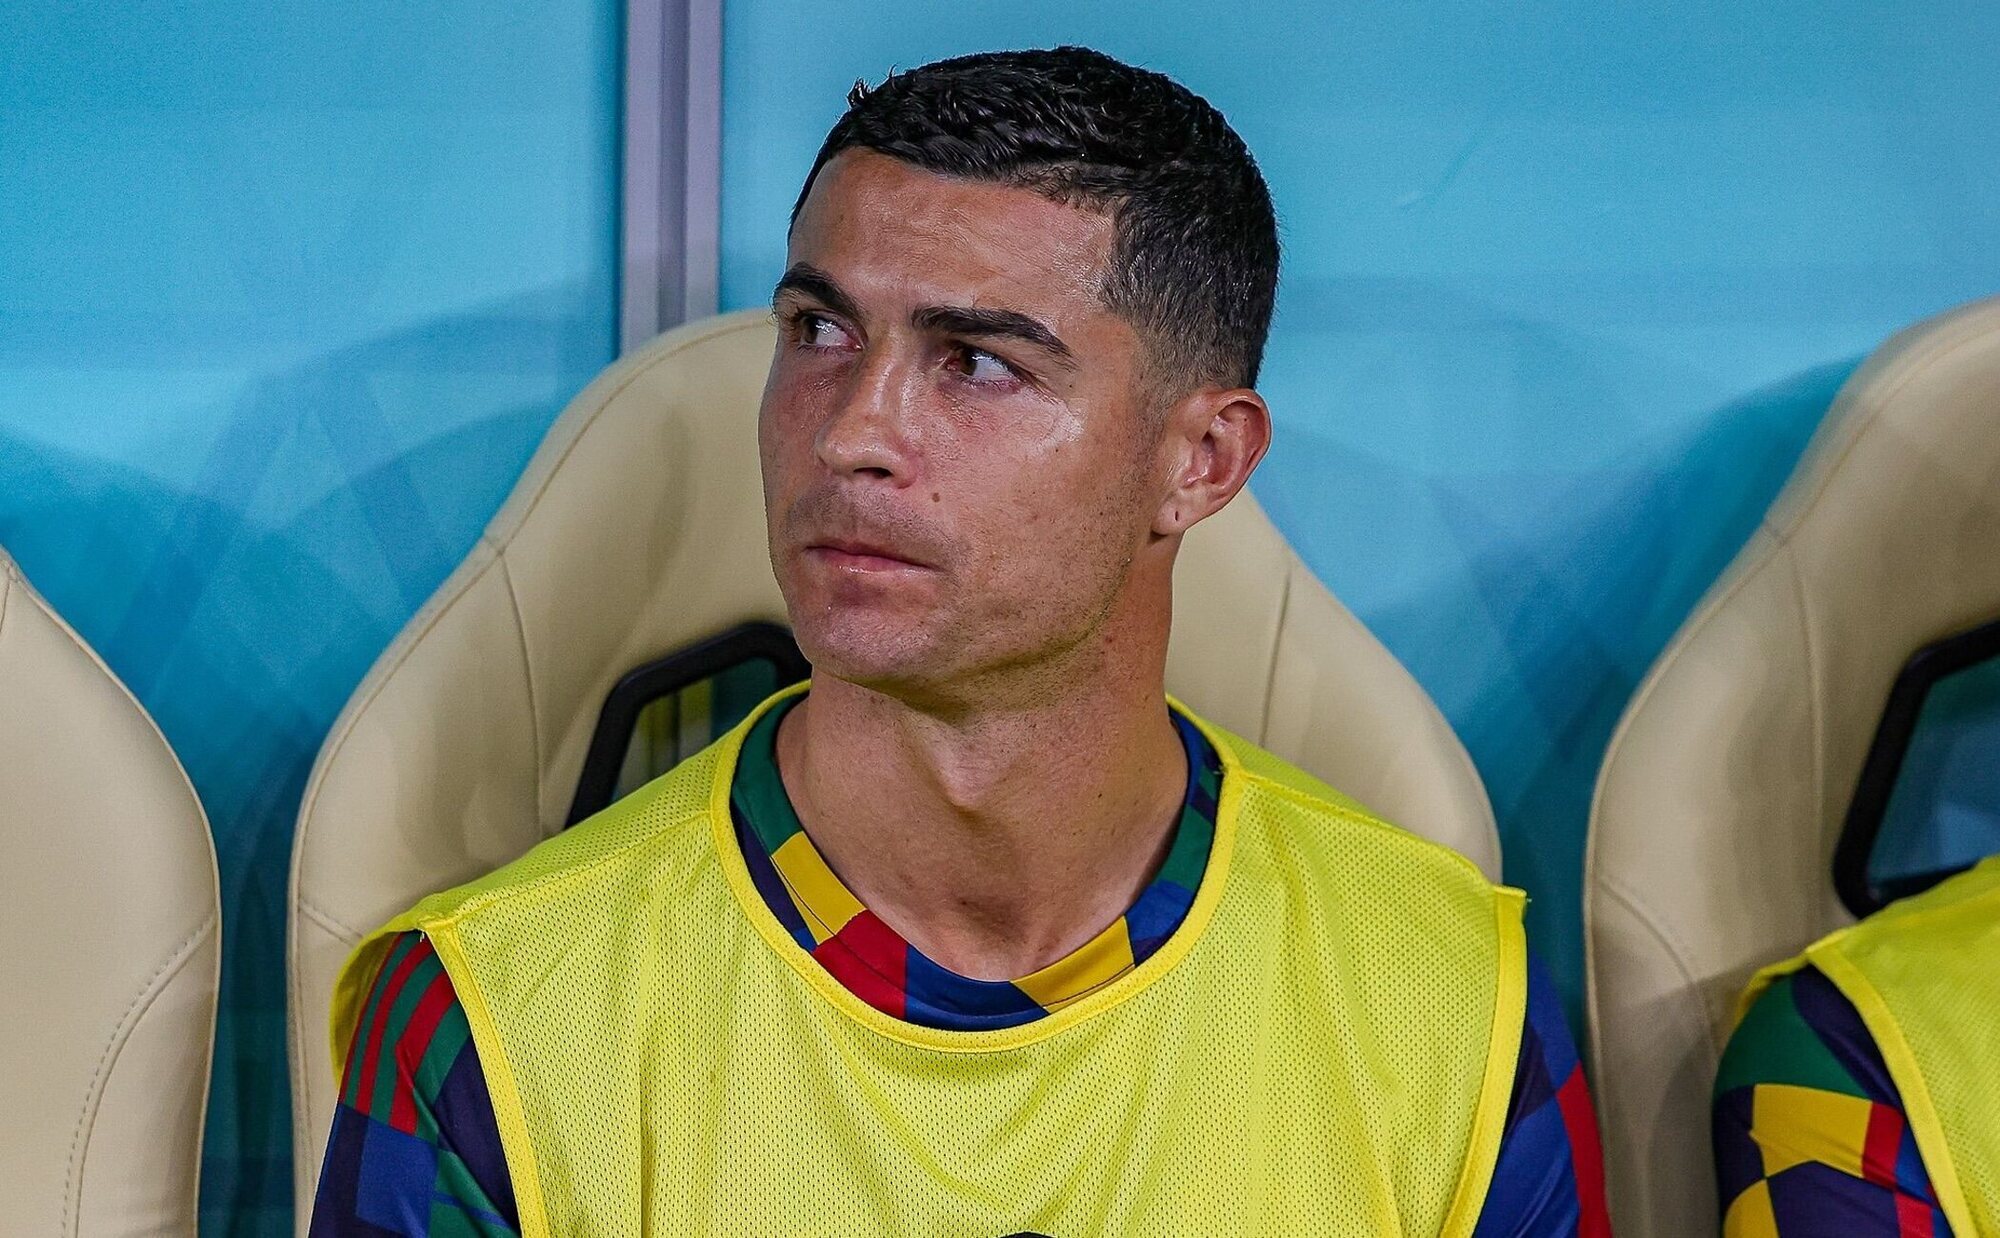 Solicitan el arresto y la deportación de Cristiano Ronaldo por agarrarse los genitales en público